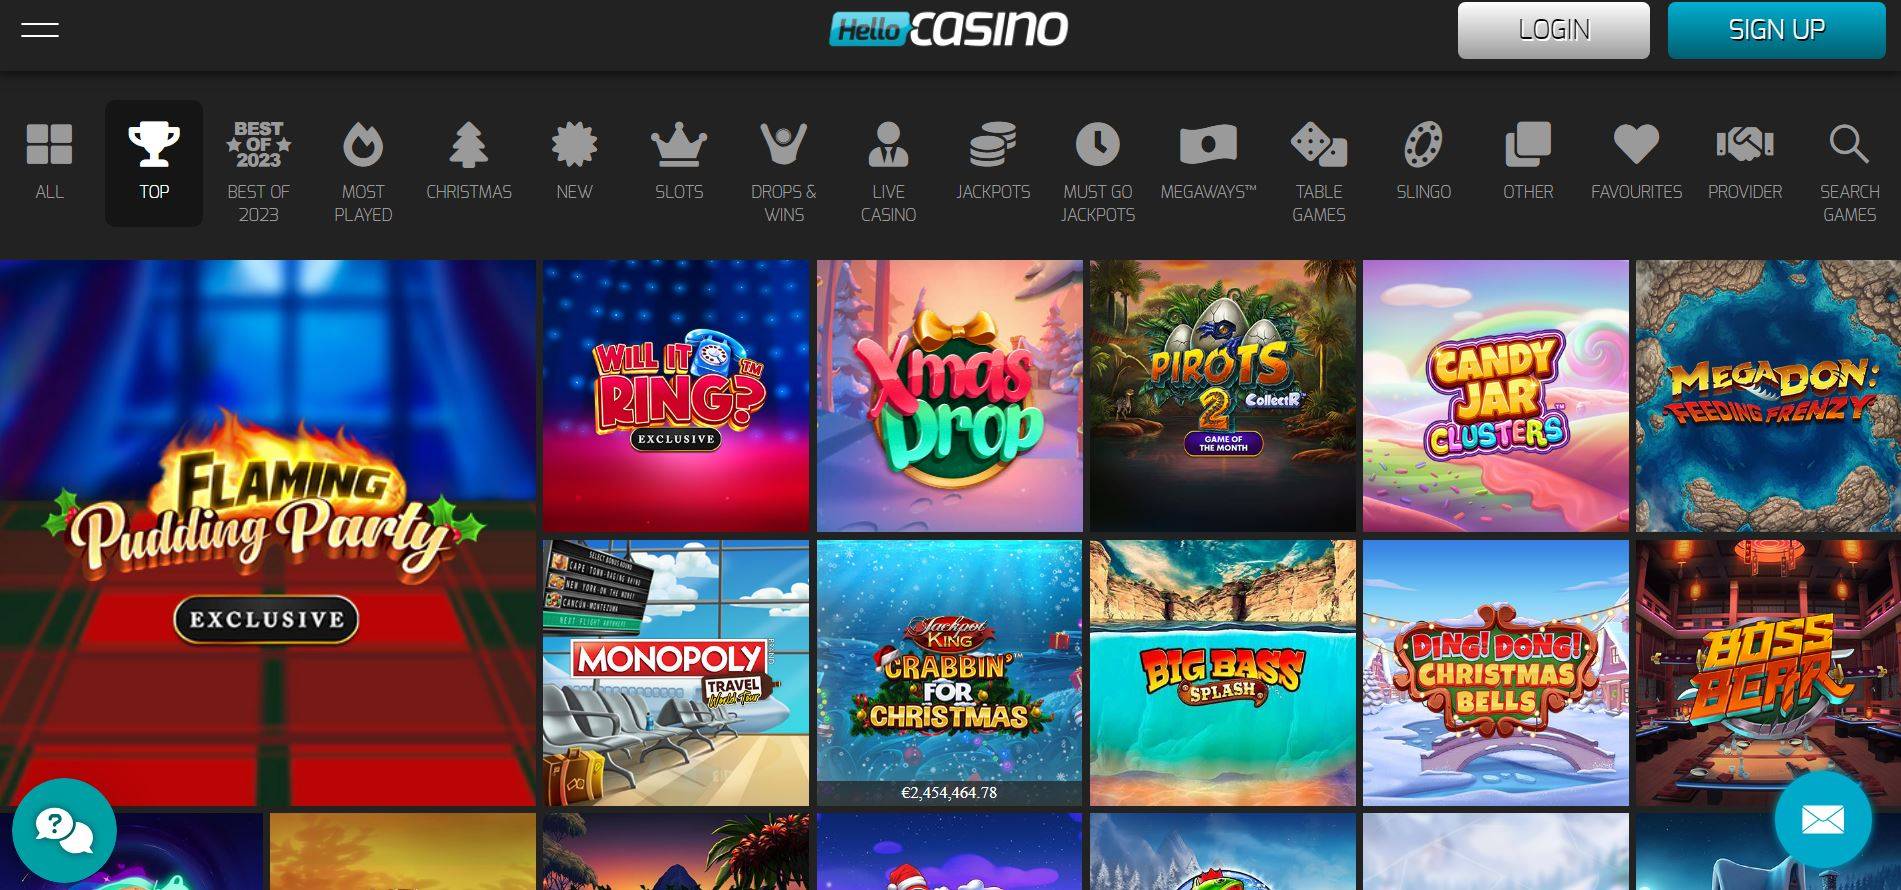 Hello Casino